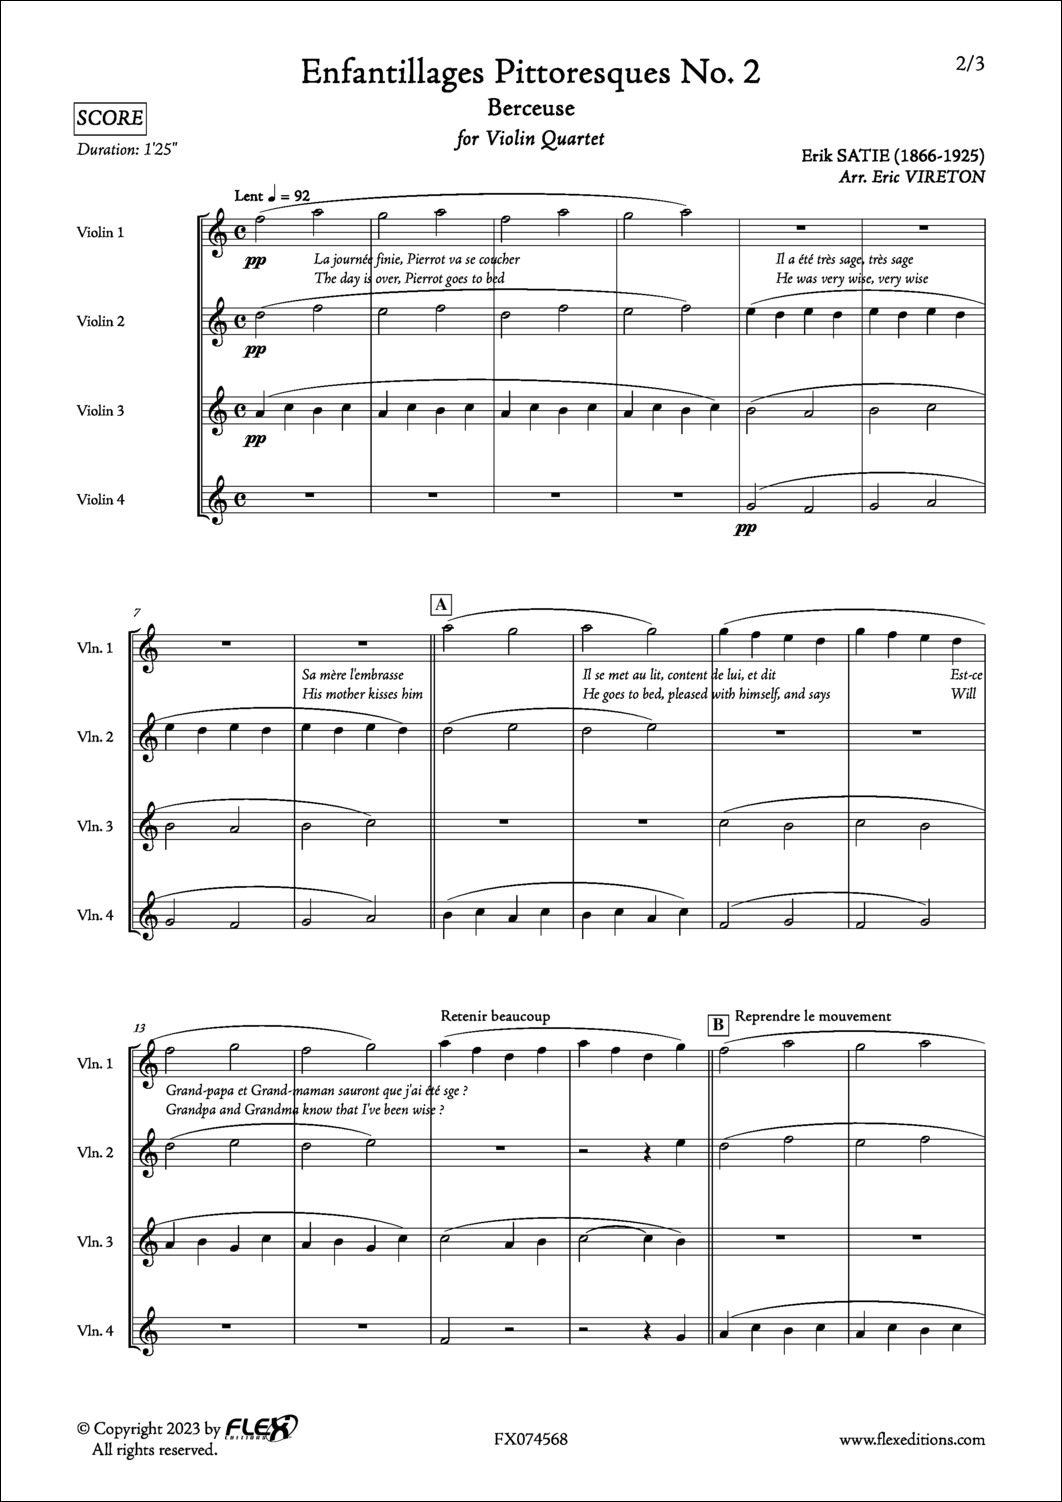 Enfantillages Pittoresques No. 2 - Berceuse - E. SATIE - <font color=#666666>Quatuor de Violons</font>